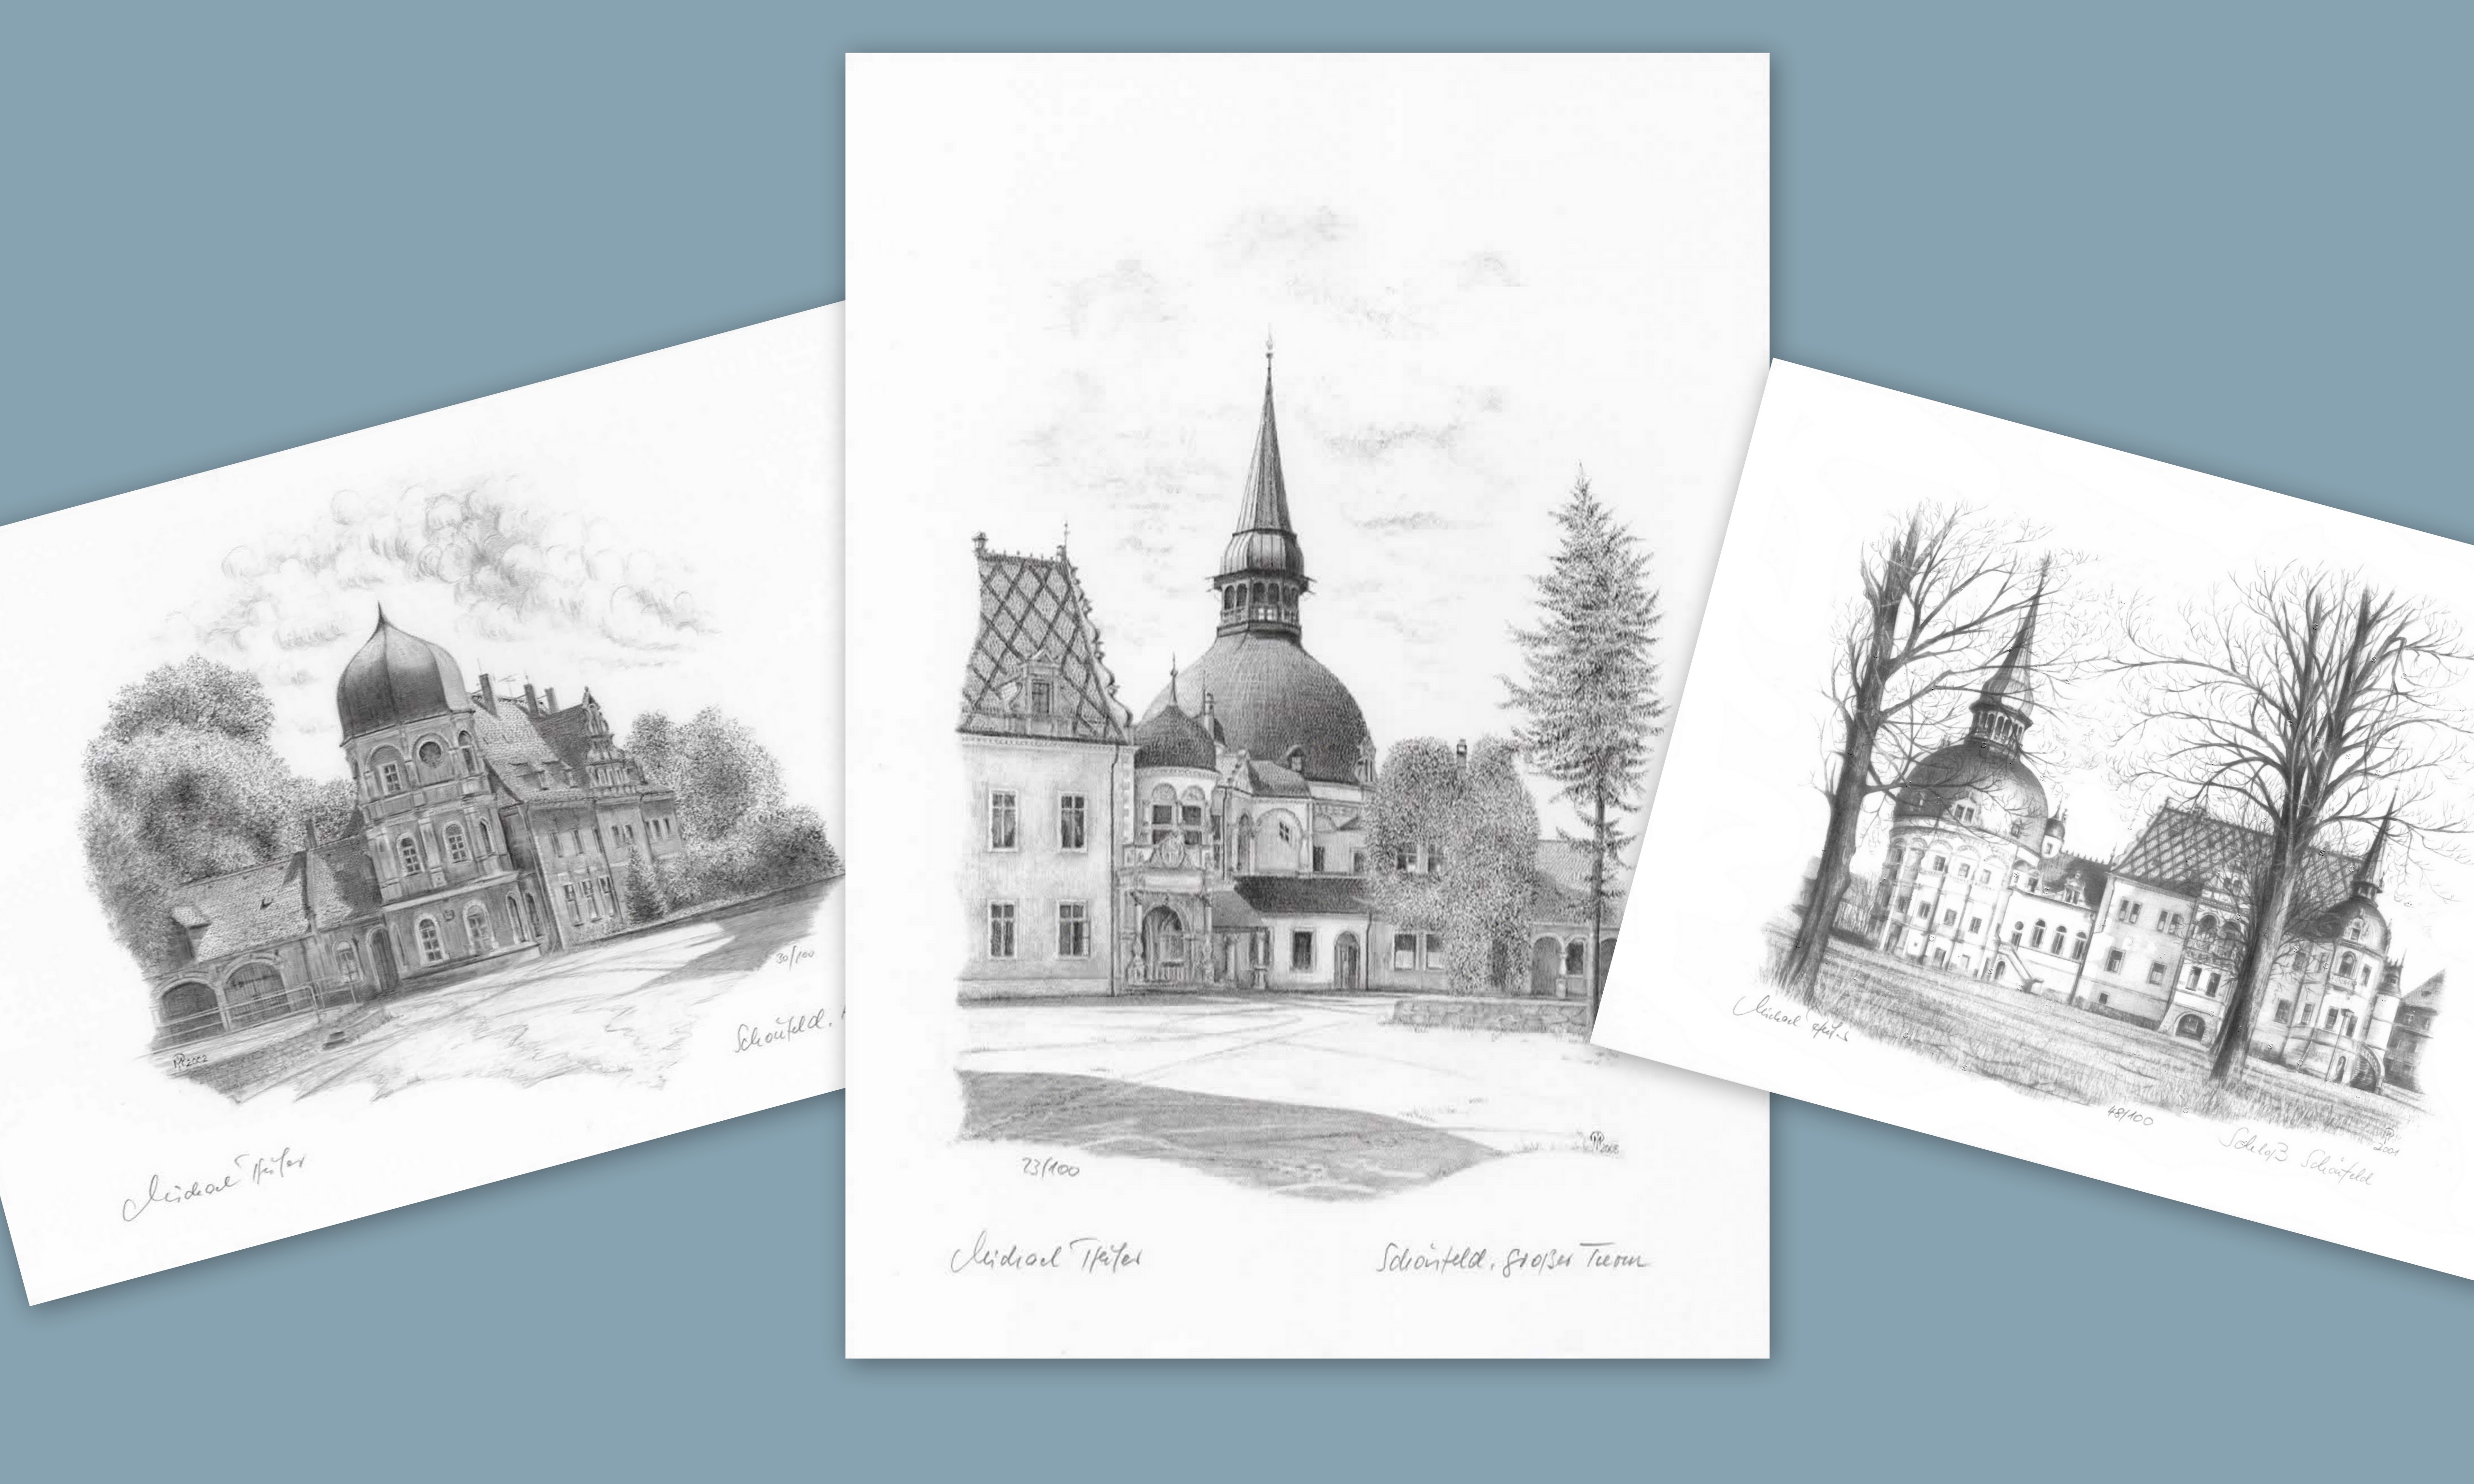 Bilder von Schloss Schönfeld, gezeichnet von Michael Pfeifer